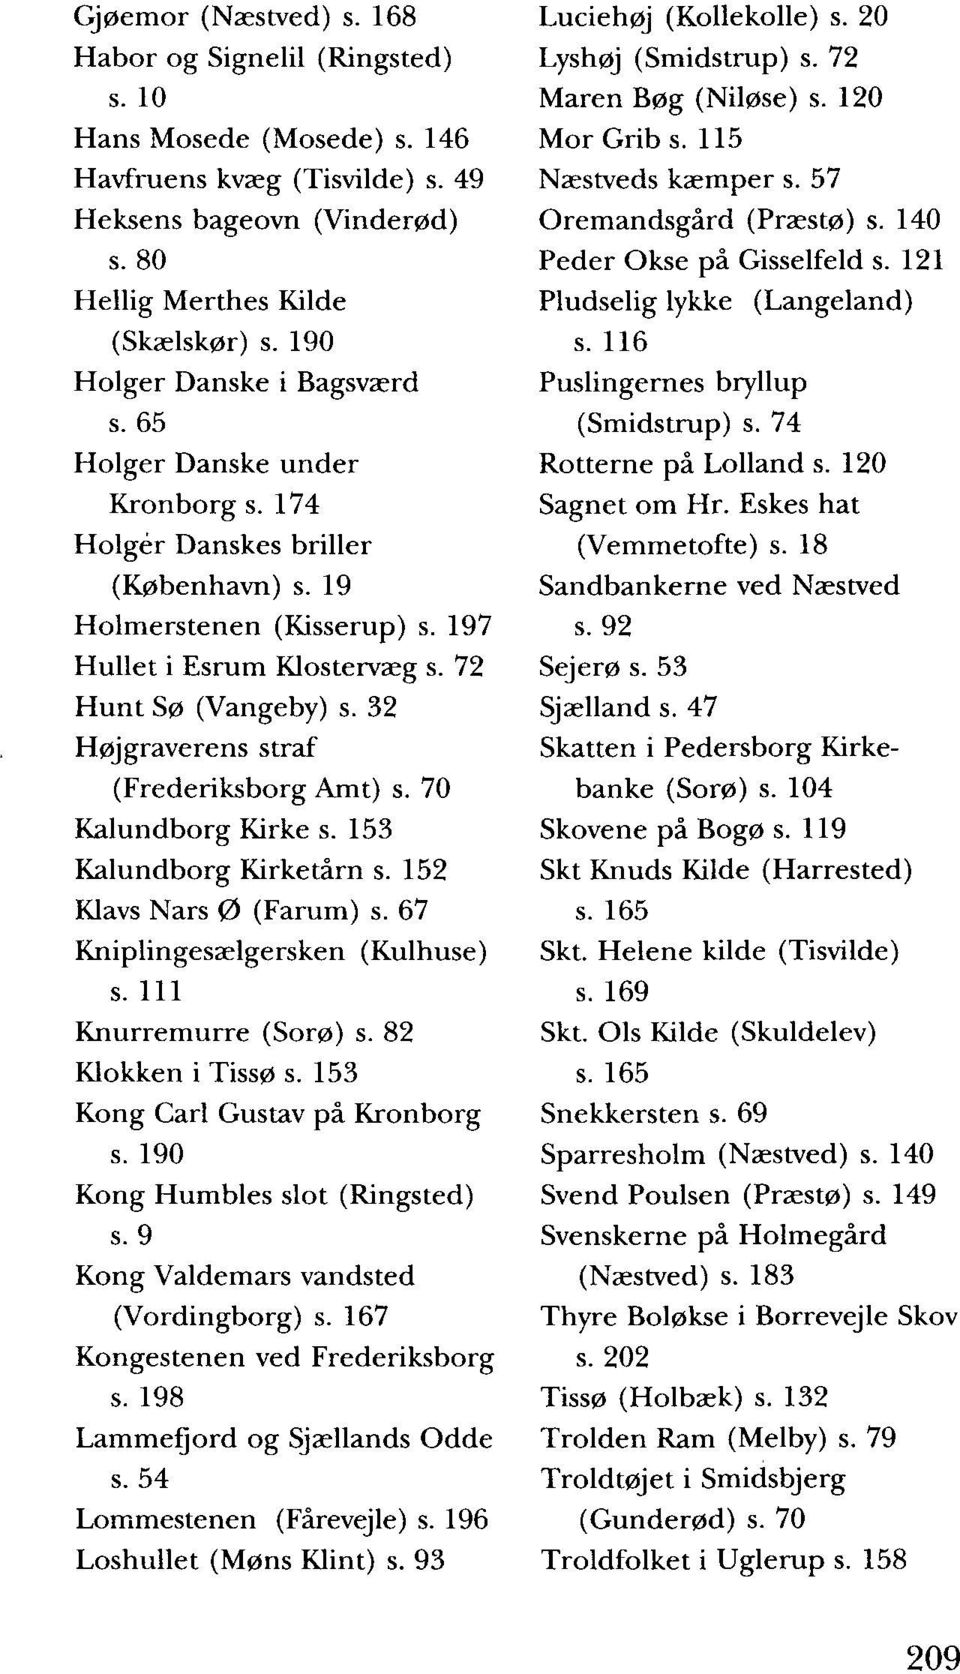 32 Høj graverens straf (Frederiksborg Amt) s. 70 Kalundborg Kirke s. 153 Kalundborg Kirketårn s. 152 Klavs Nars 0 (Farum) s. 67 Kniplingesælgersken (Kulhuse) s. 111 Knurremurre (Sorø) s.